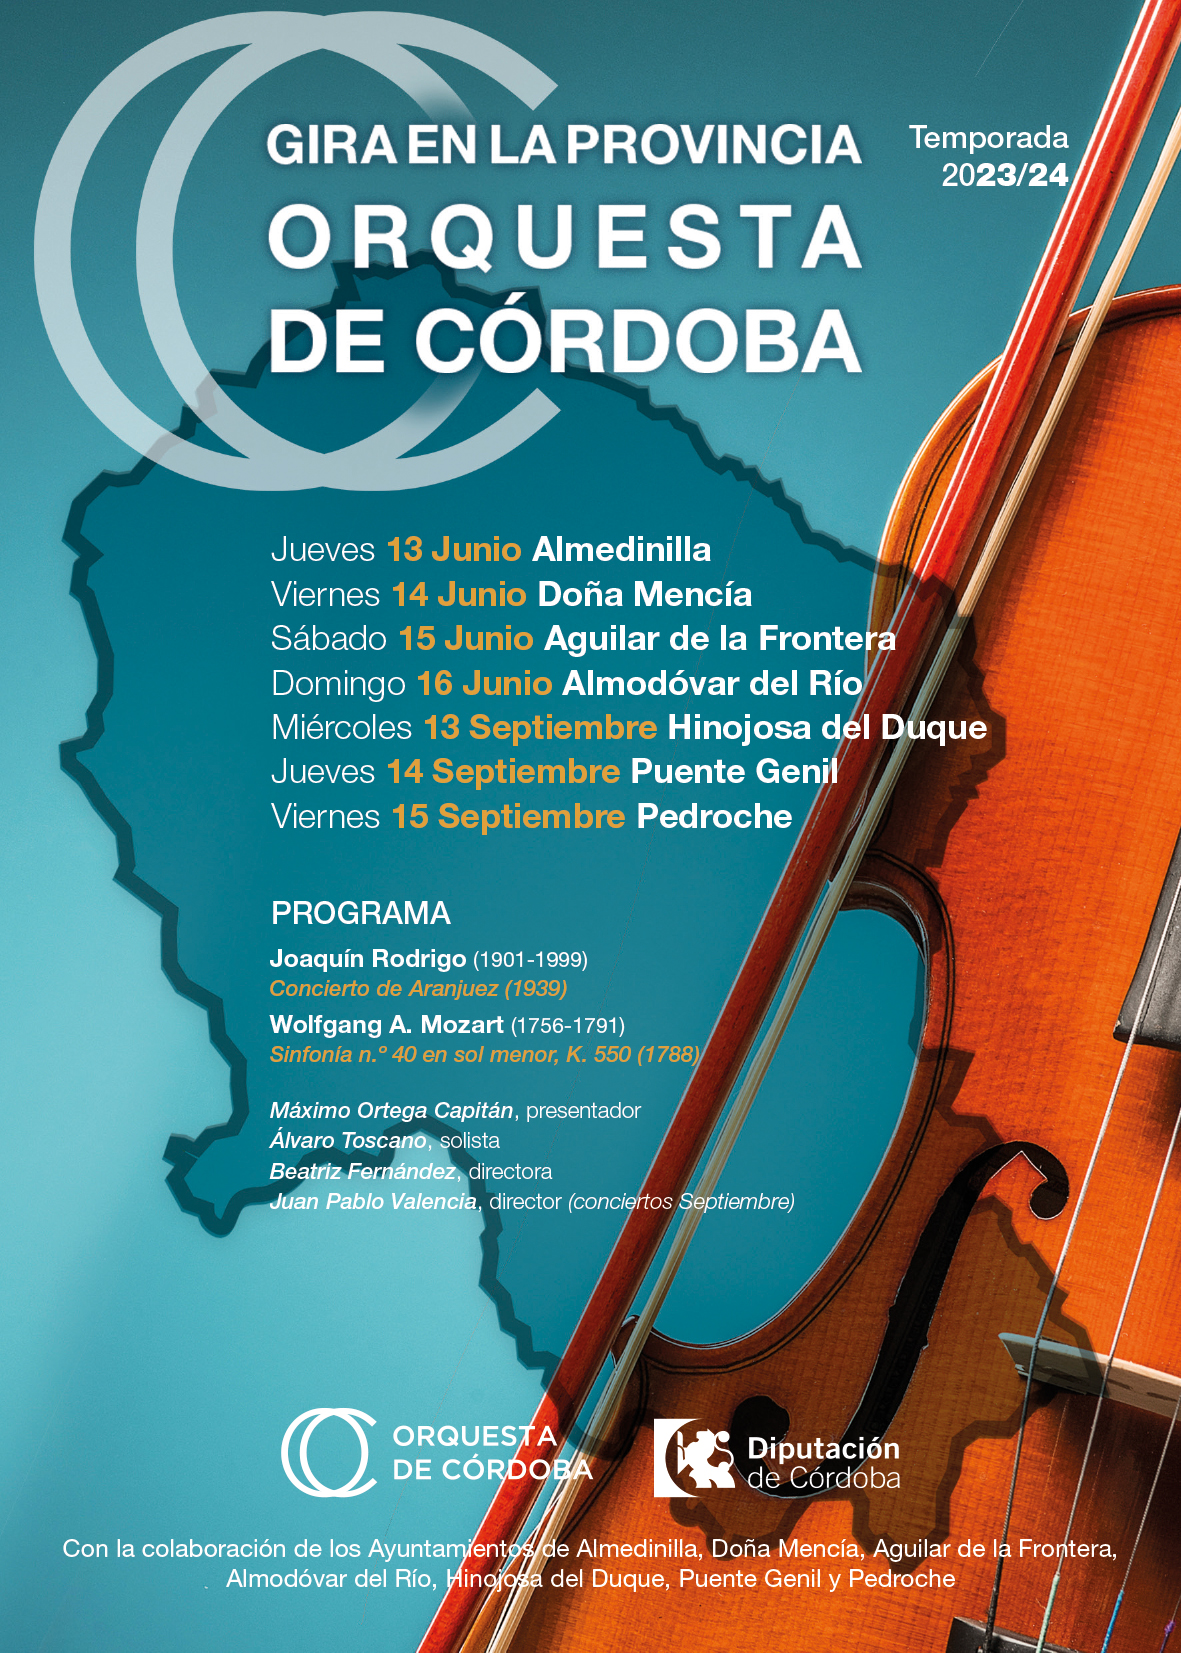 Gira de la Orquesta de Córdoba en la Provincia: Conciertos en Siete Municipios